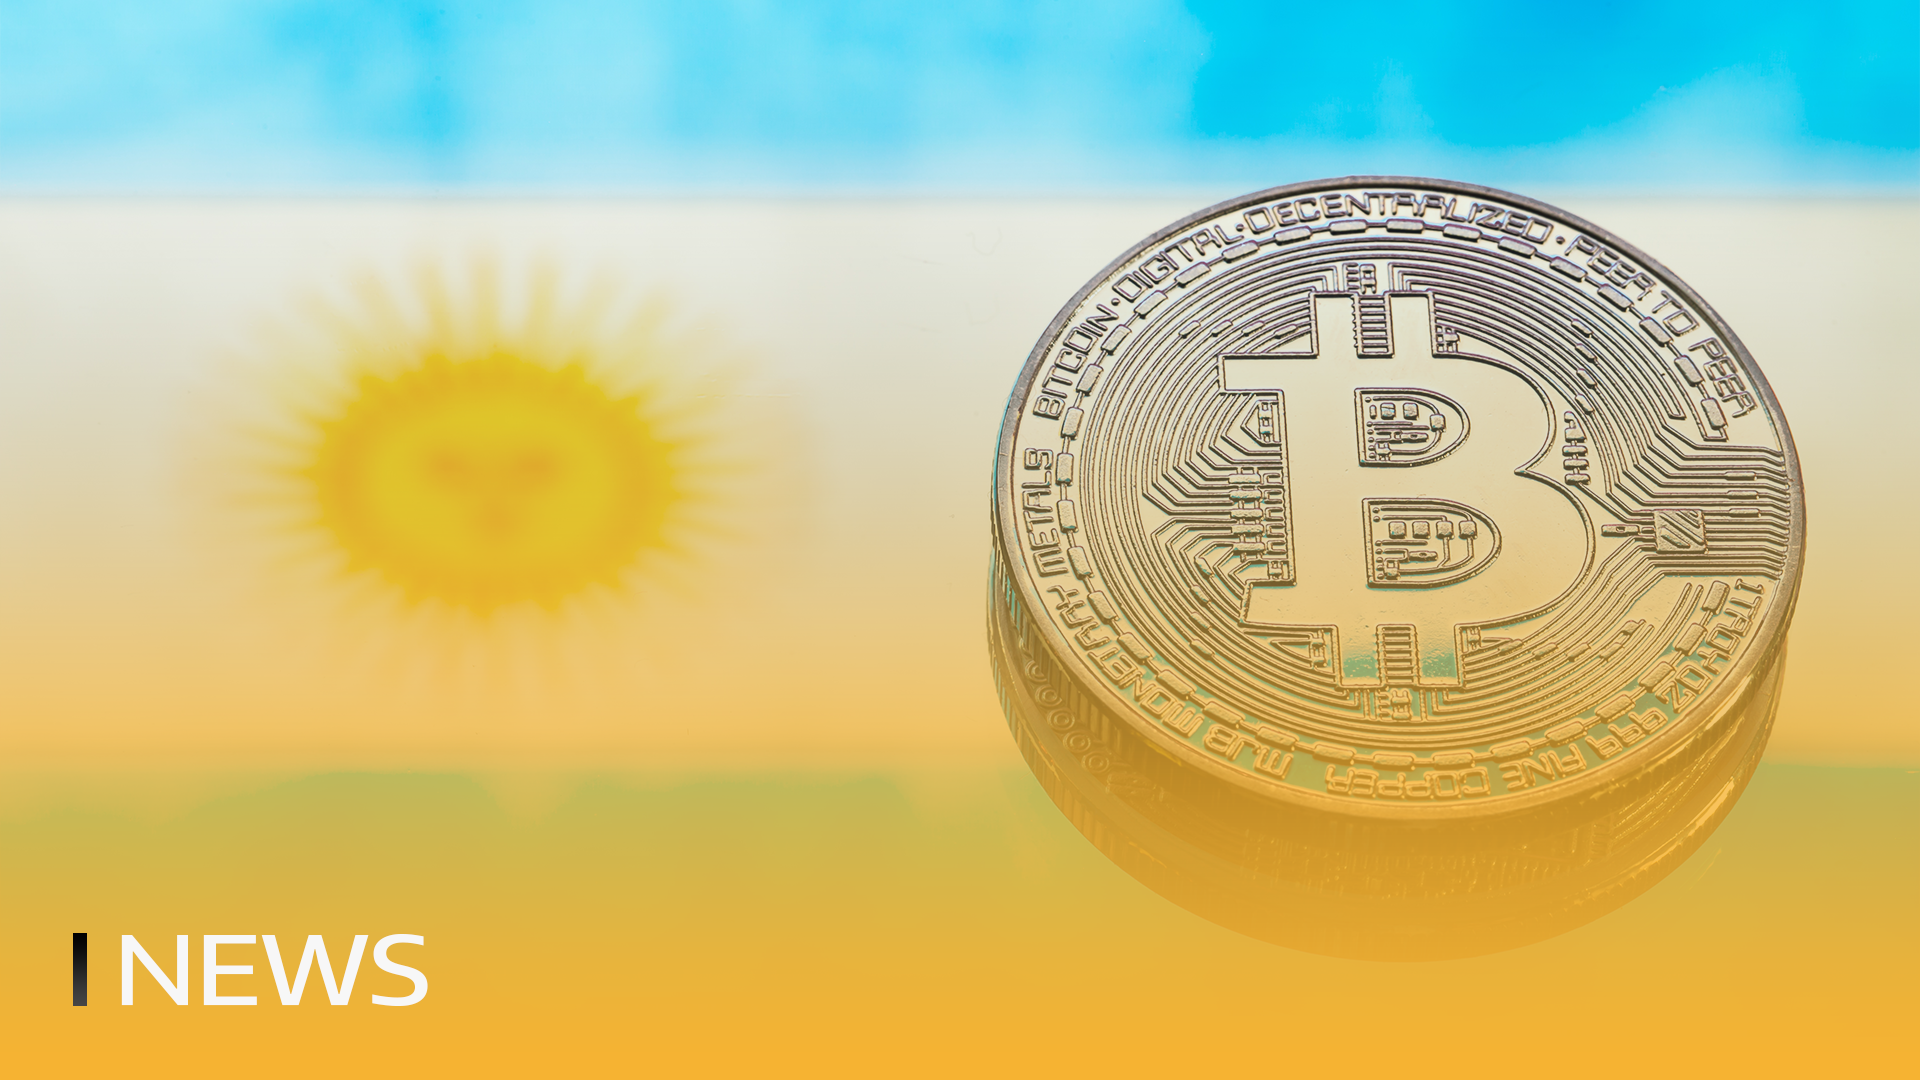 Oficial: Contactos na Argentina podem ser resolvidos em Bitcoin